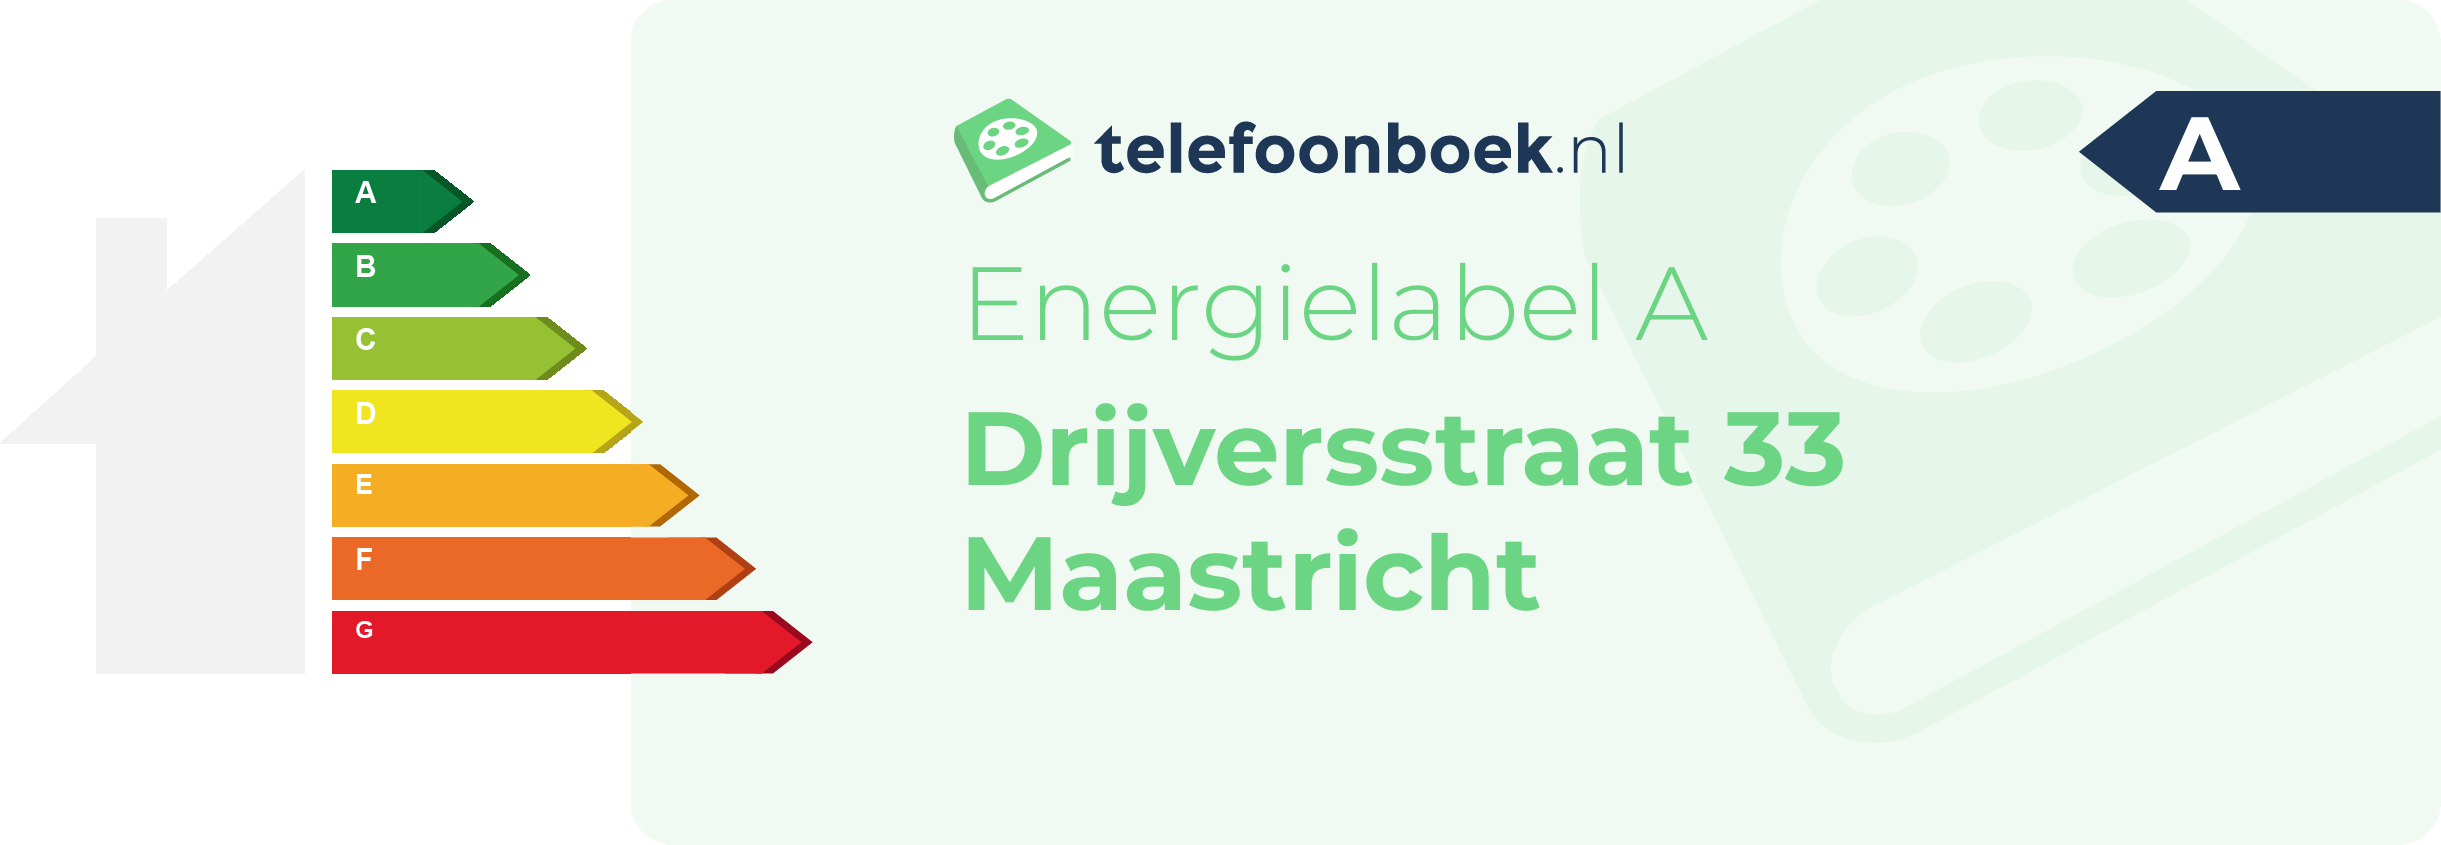 Energielabel Drijversstraat 33 Maastricht